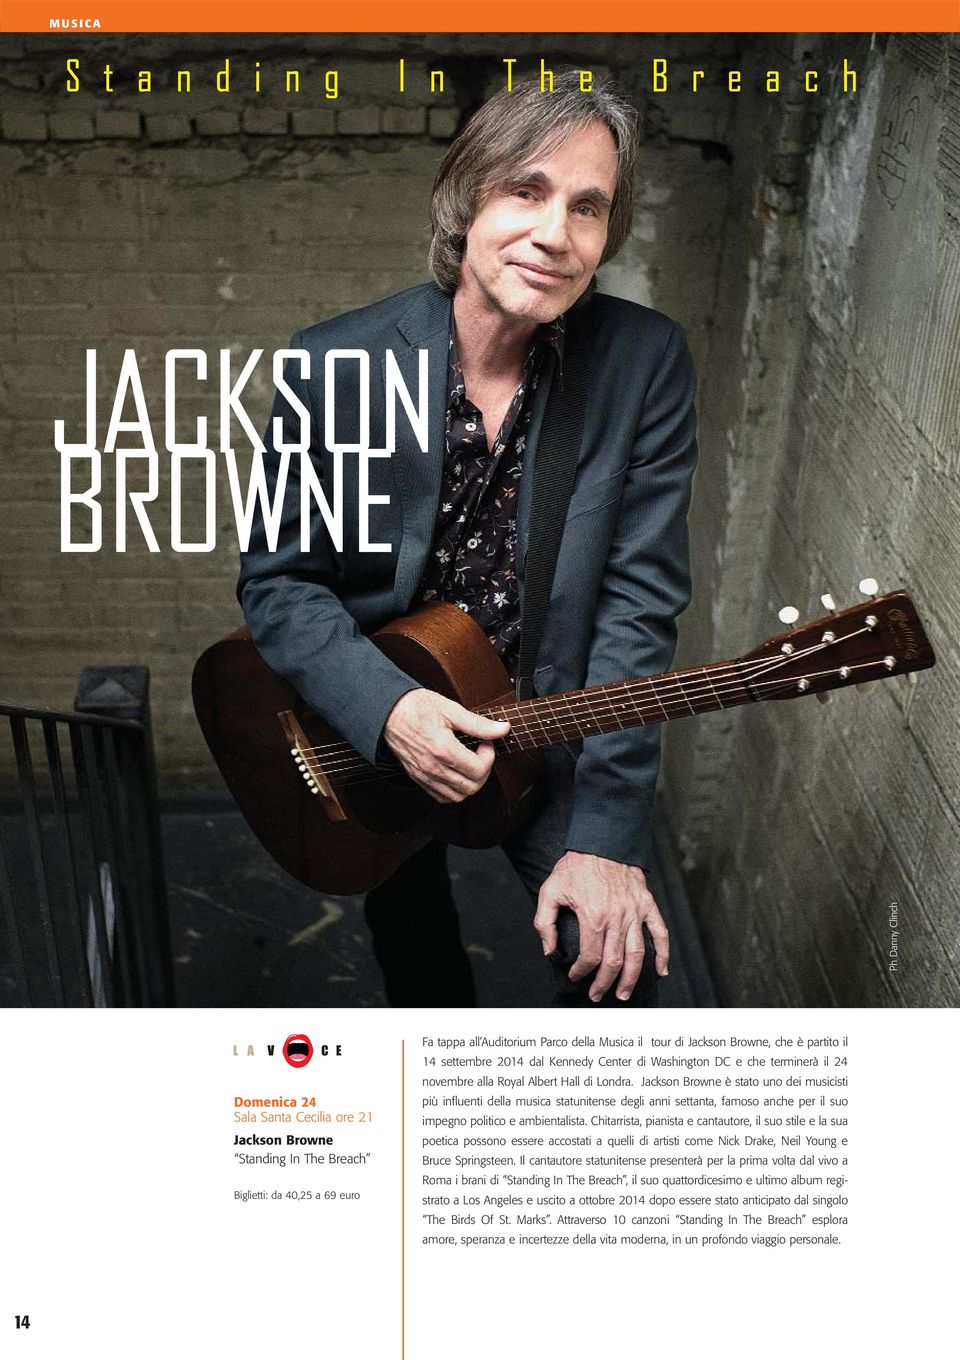 Jackson Browne è stato uno dei musicisti più influenti della musica statunitense degli anni settanta, famoso anche per il suo impegno politico e ambientalista.